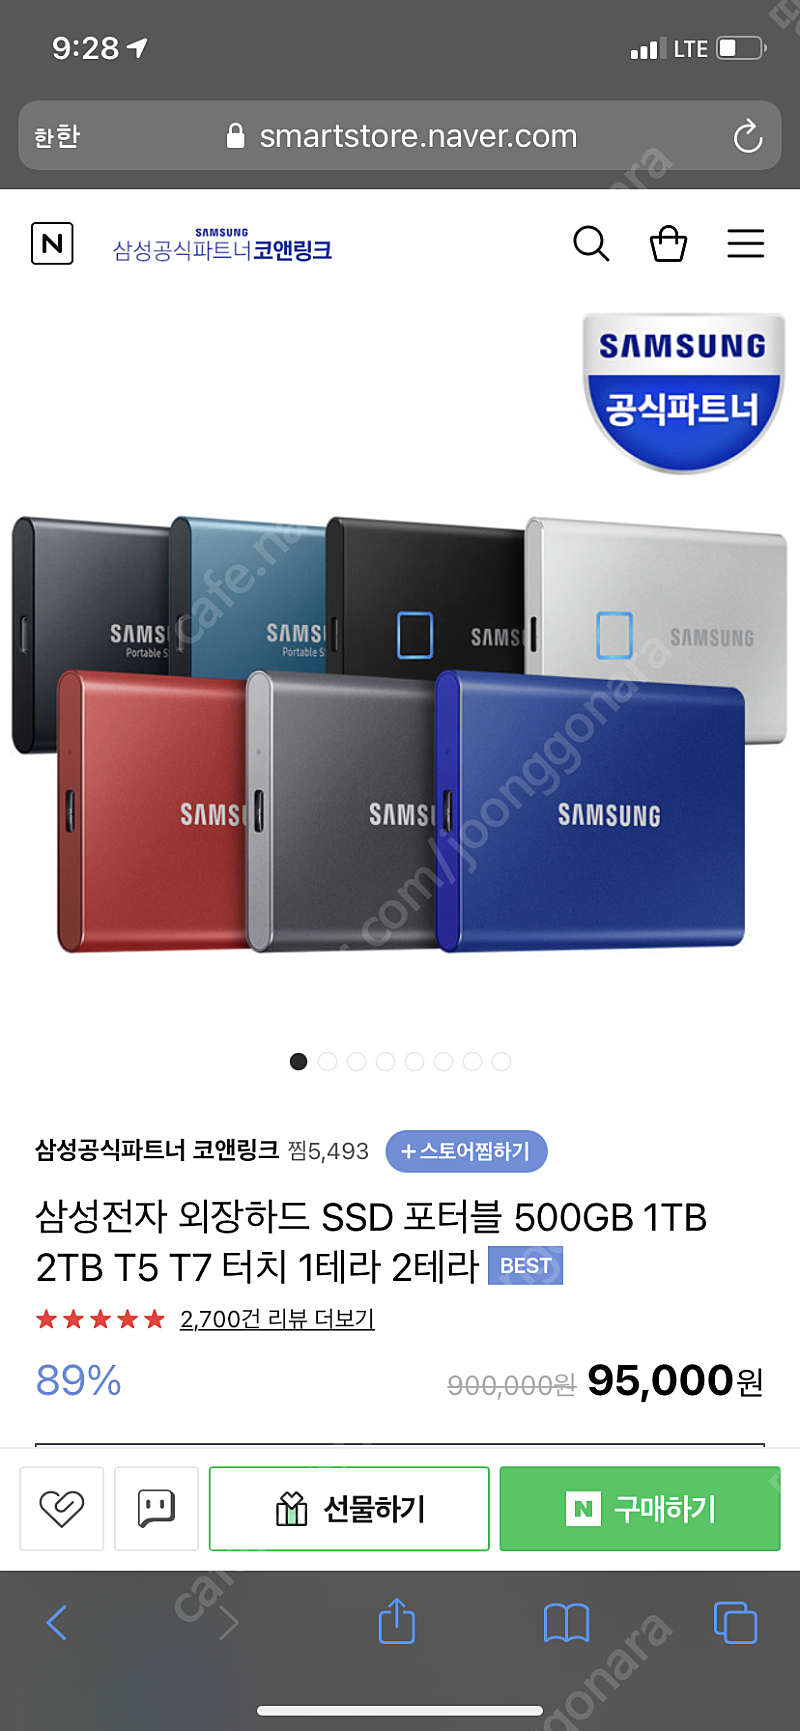 [새상품] 삼성 포터블 ssd t7 500GB 택포 9만